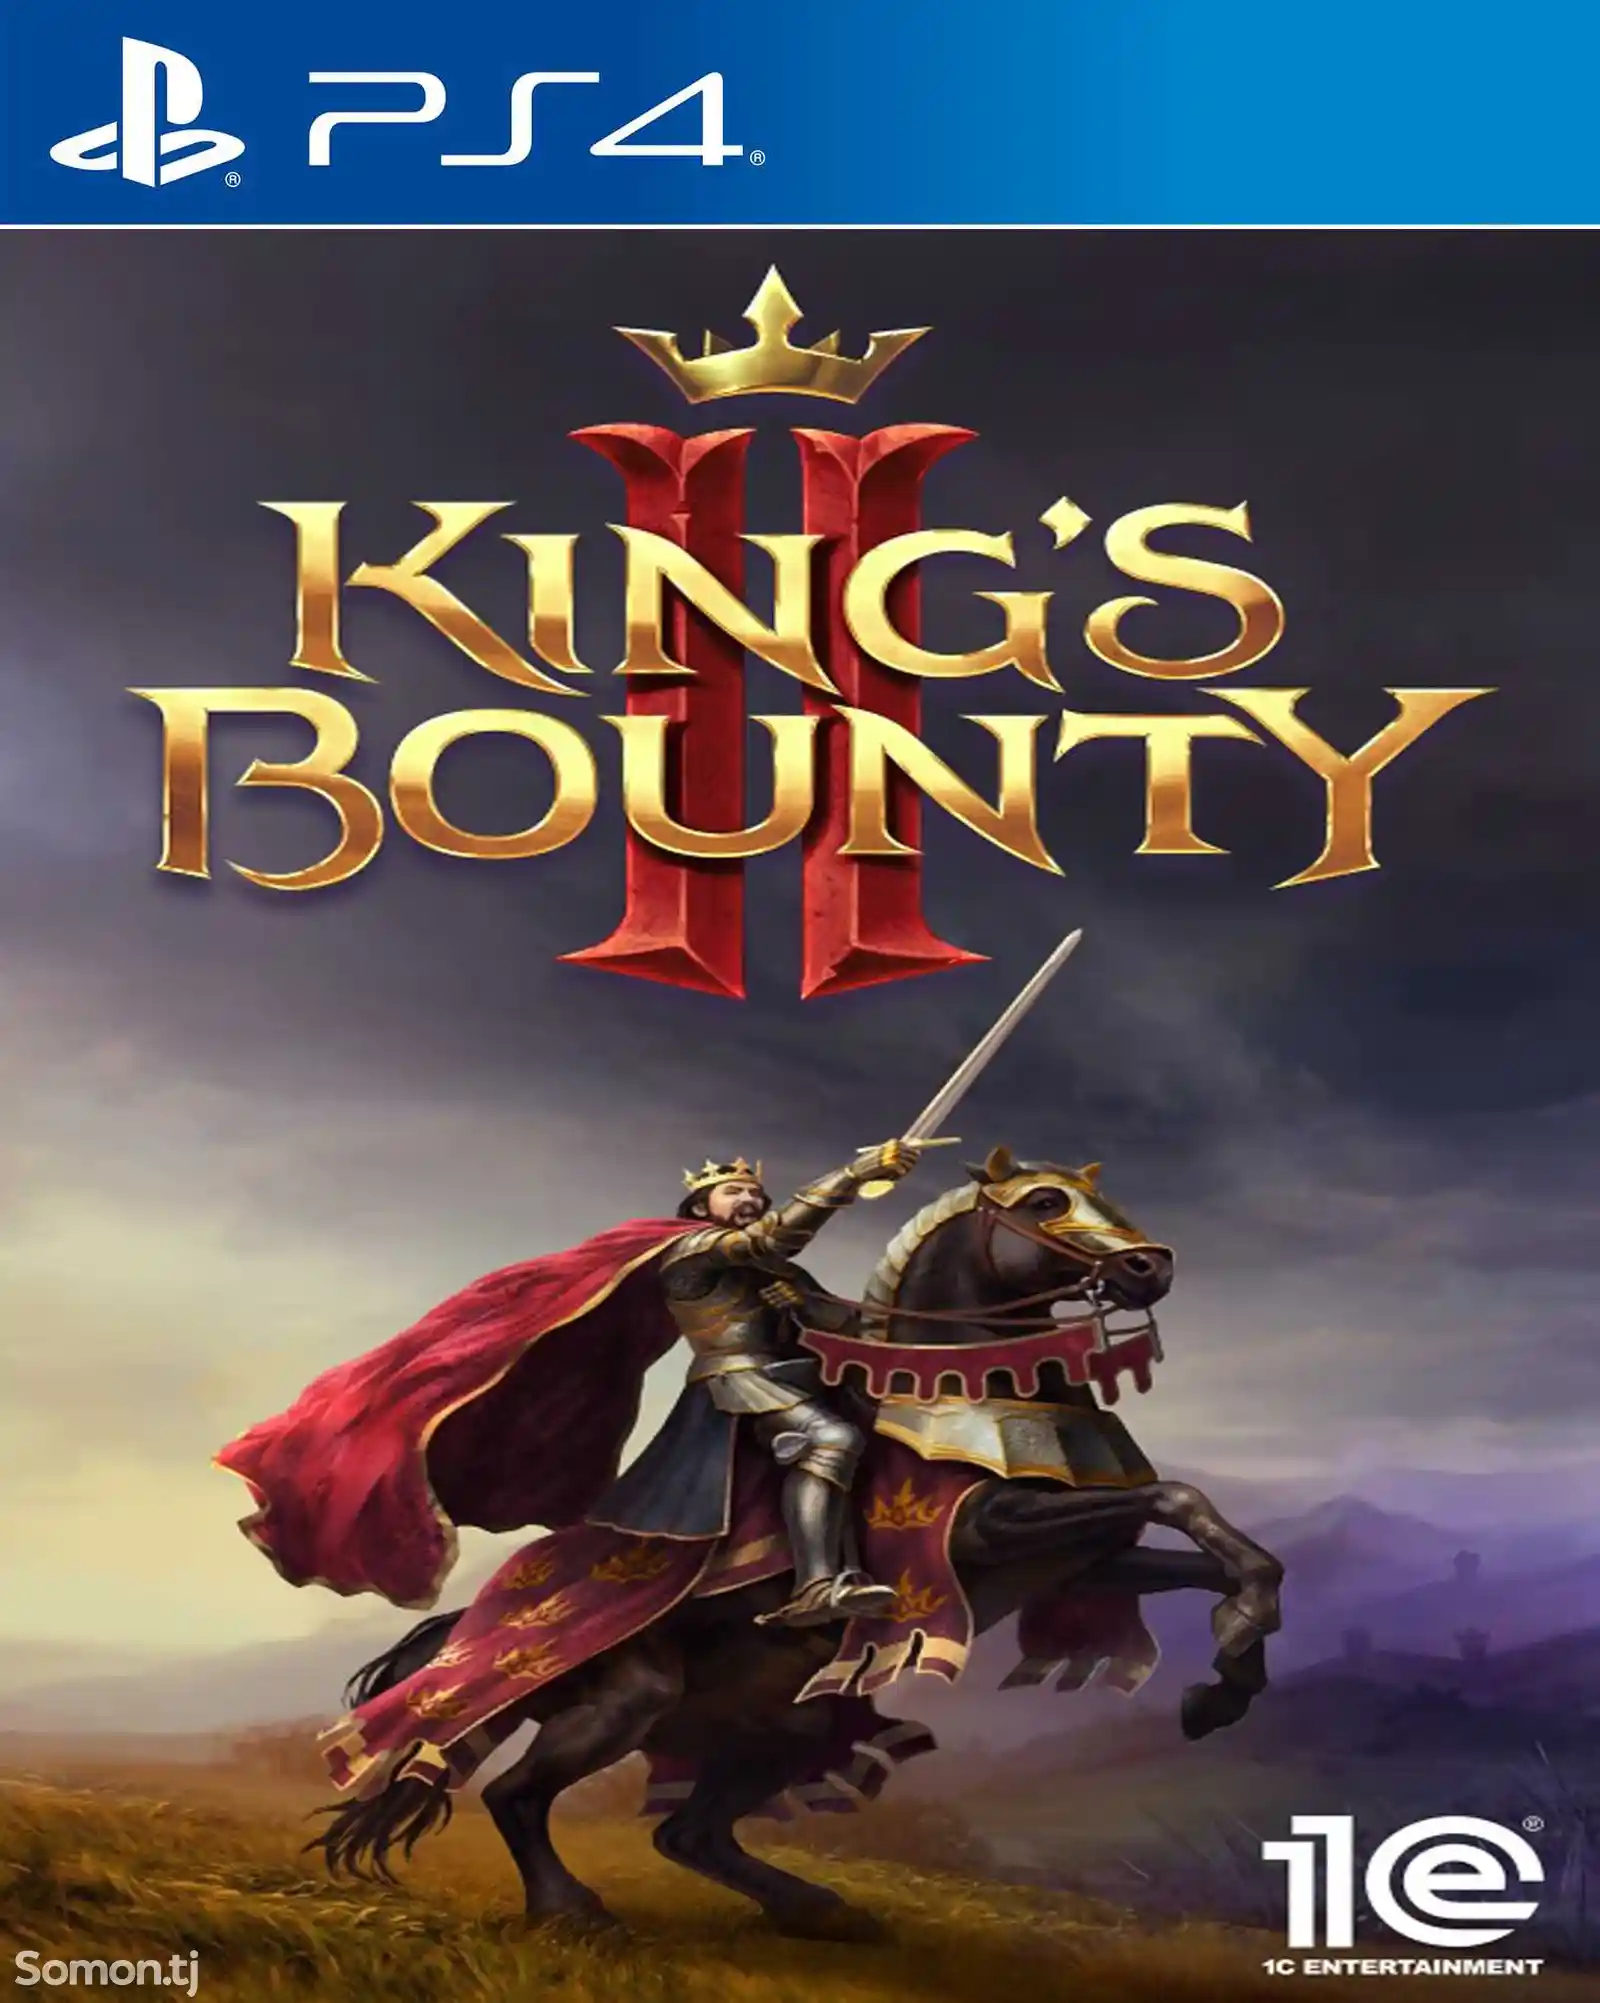 Игра Kings bounty 2 для PS-4 / 5.05 / 6.72 / 7.02 / 7.55 / 9.00 /-1